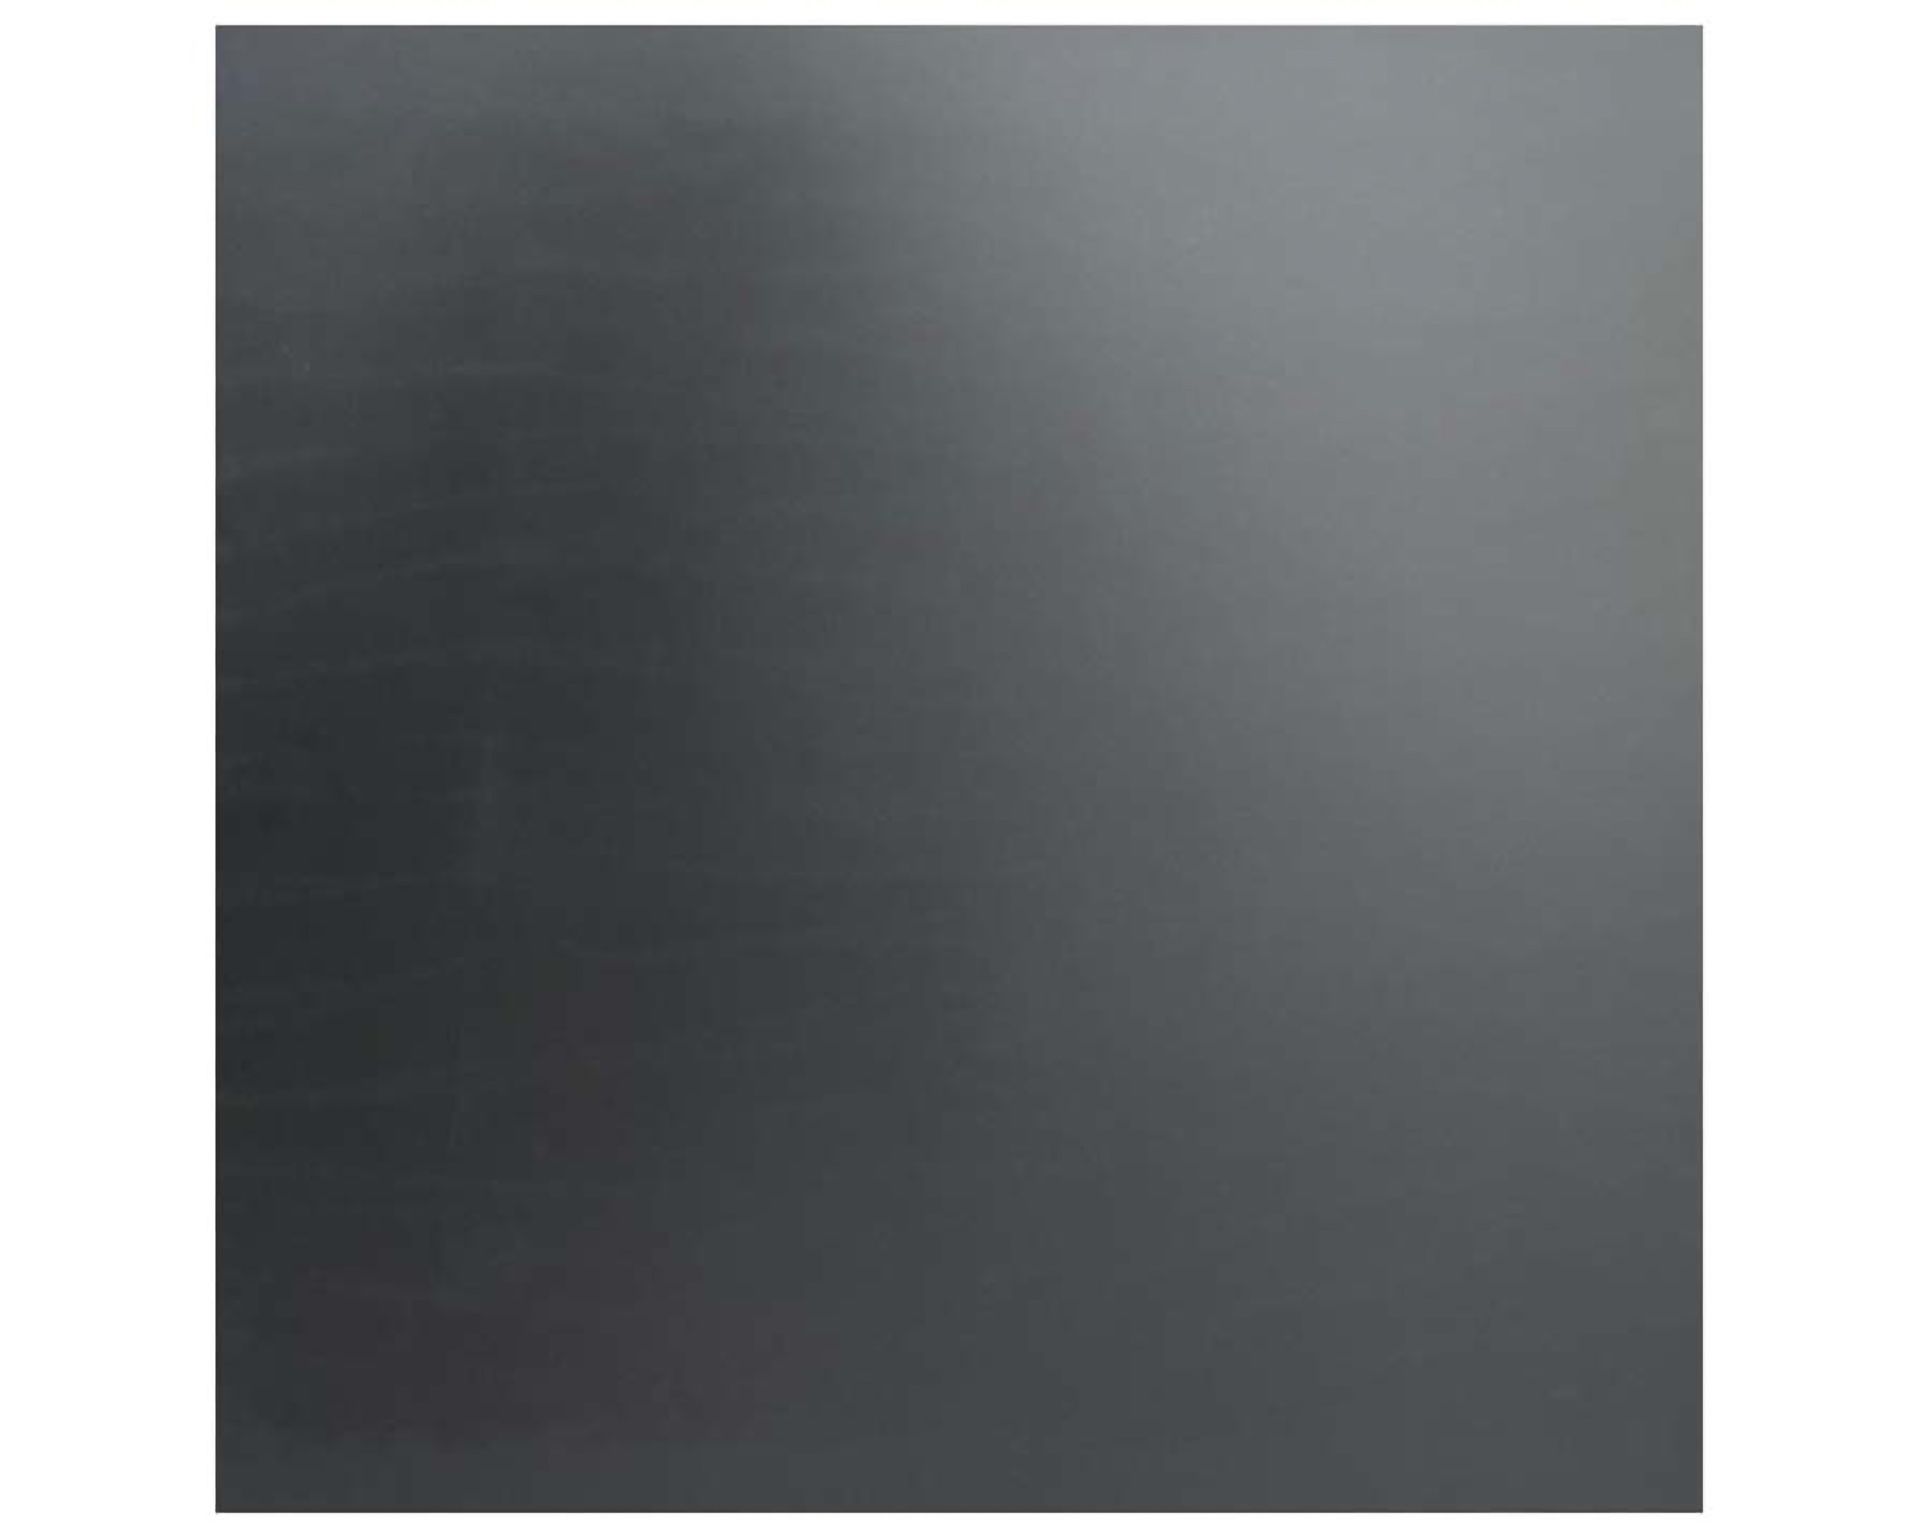 Urban Terrassentisch schwarzer Sockel + Schwarze HPL Tischplatte 70x70cm